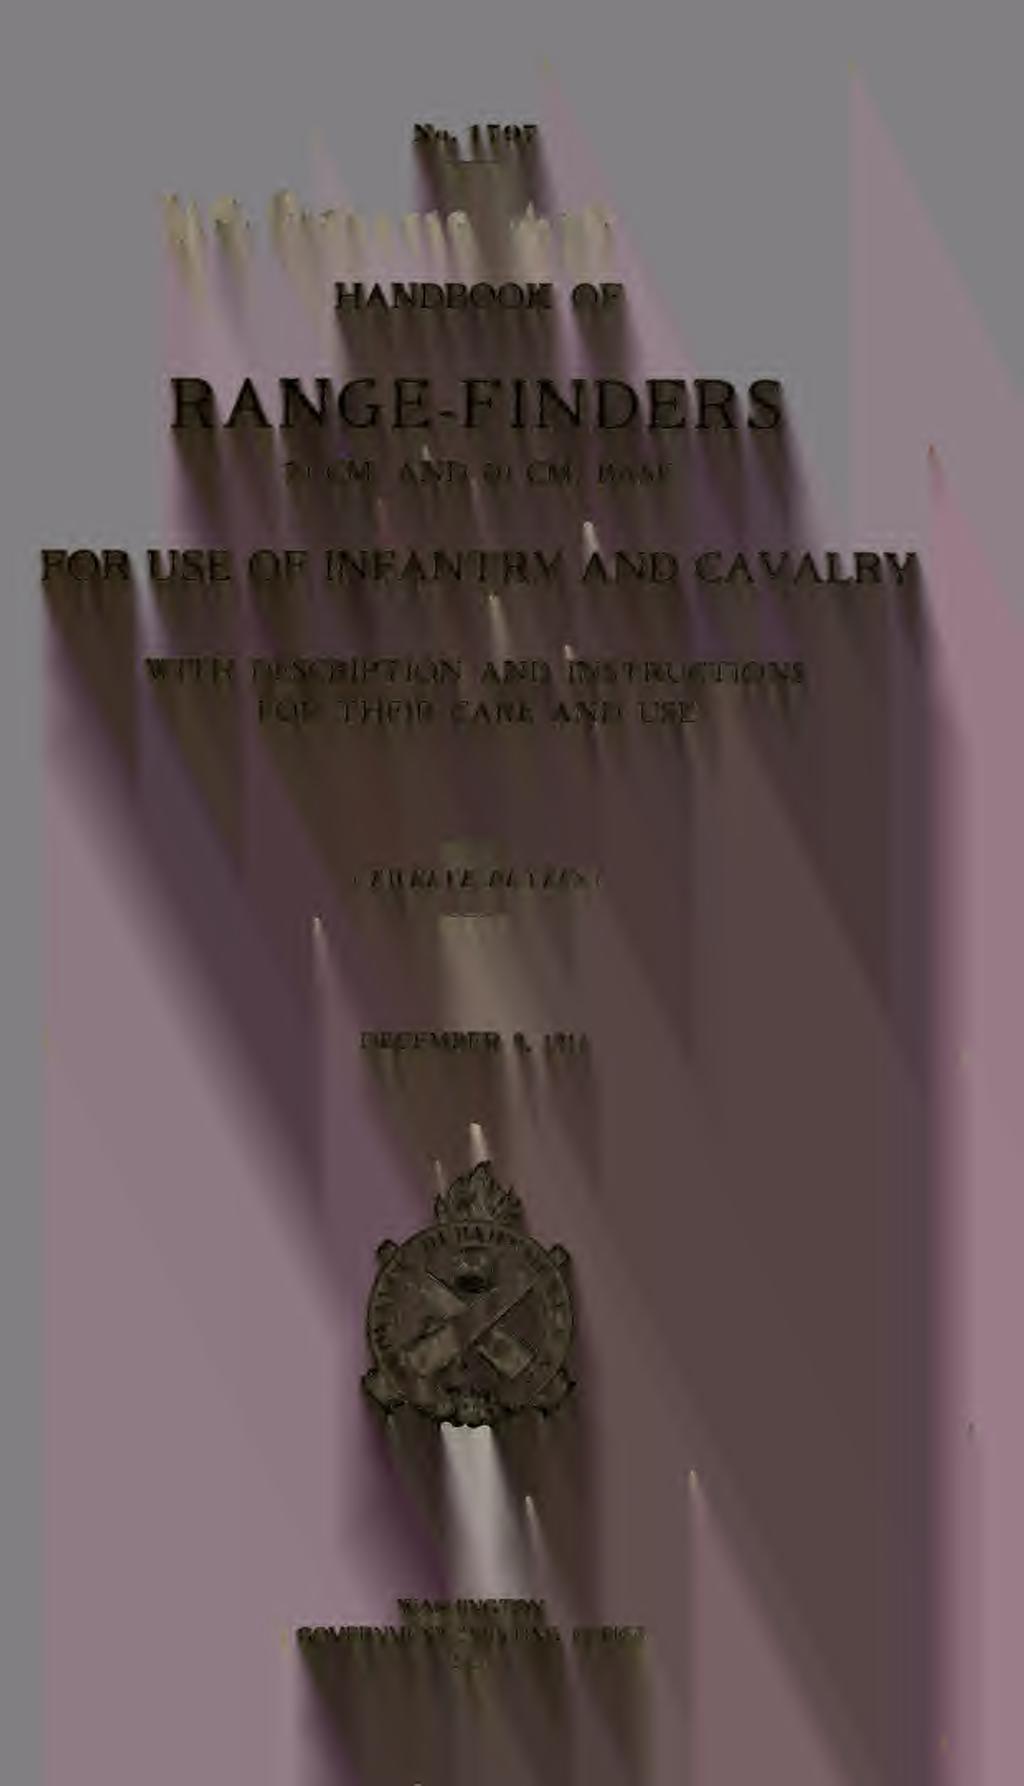 No. 1797 HANDBOOK OF RANGE-FINDERS 70 CM. AND 80 CM.